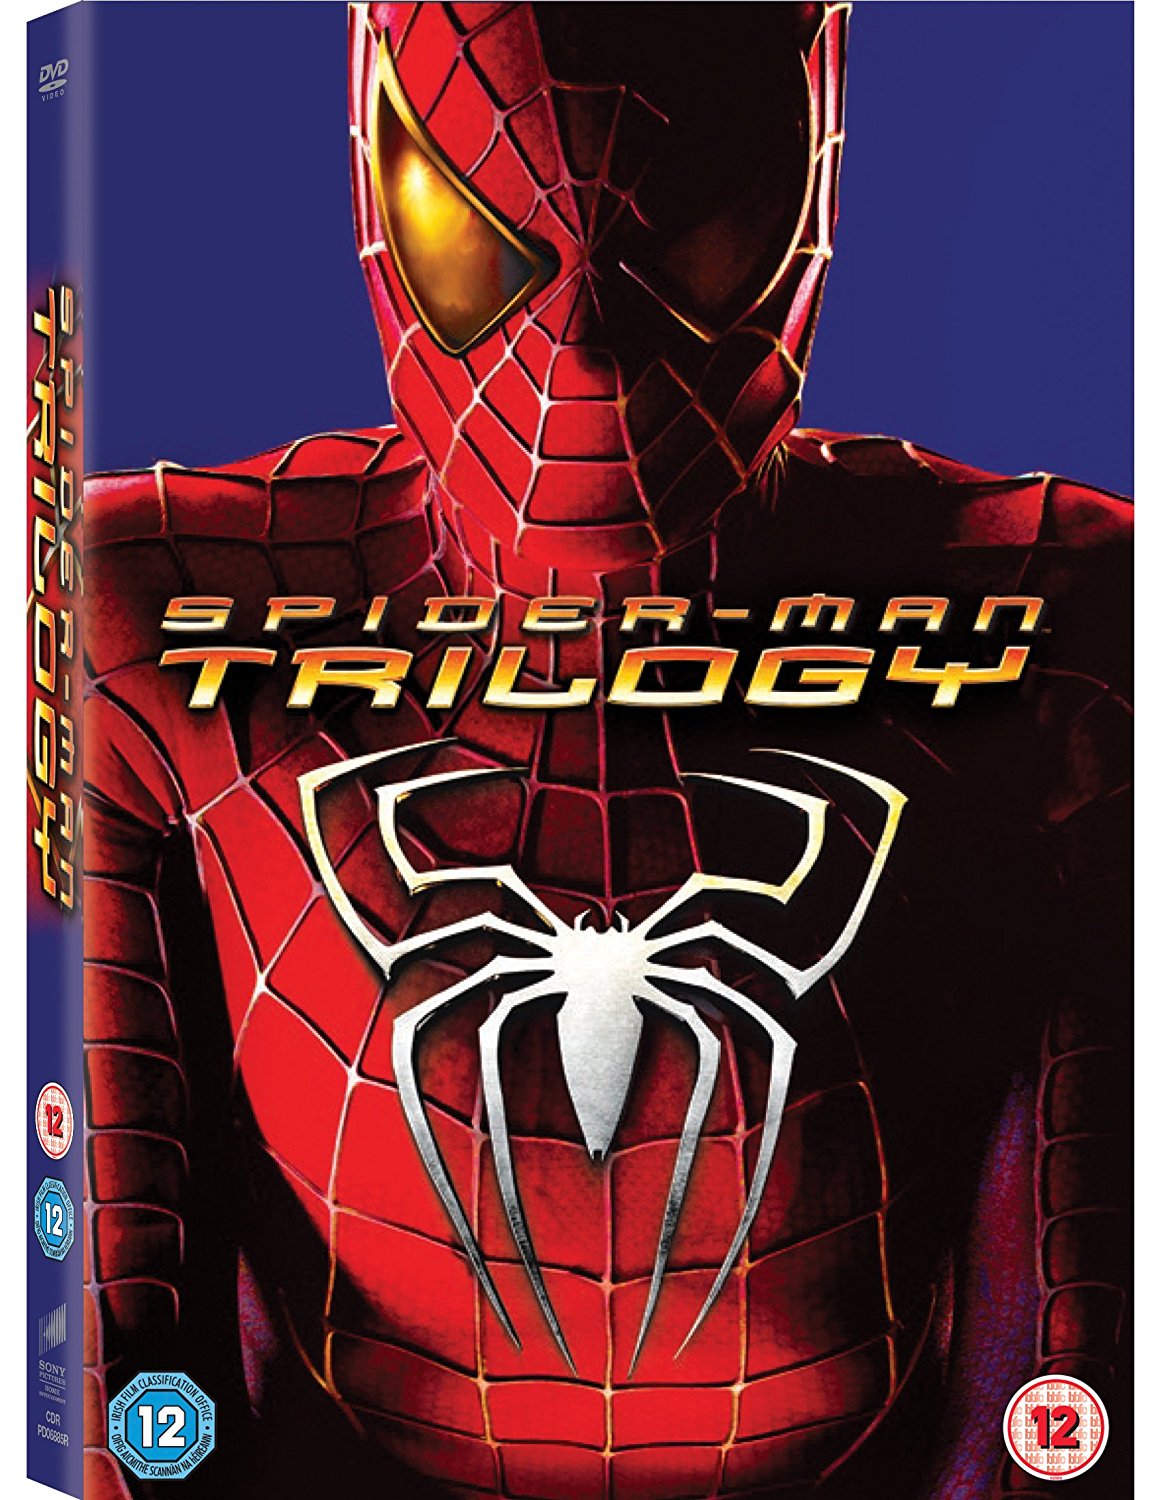 Spider-Man Trilogy (DVD)